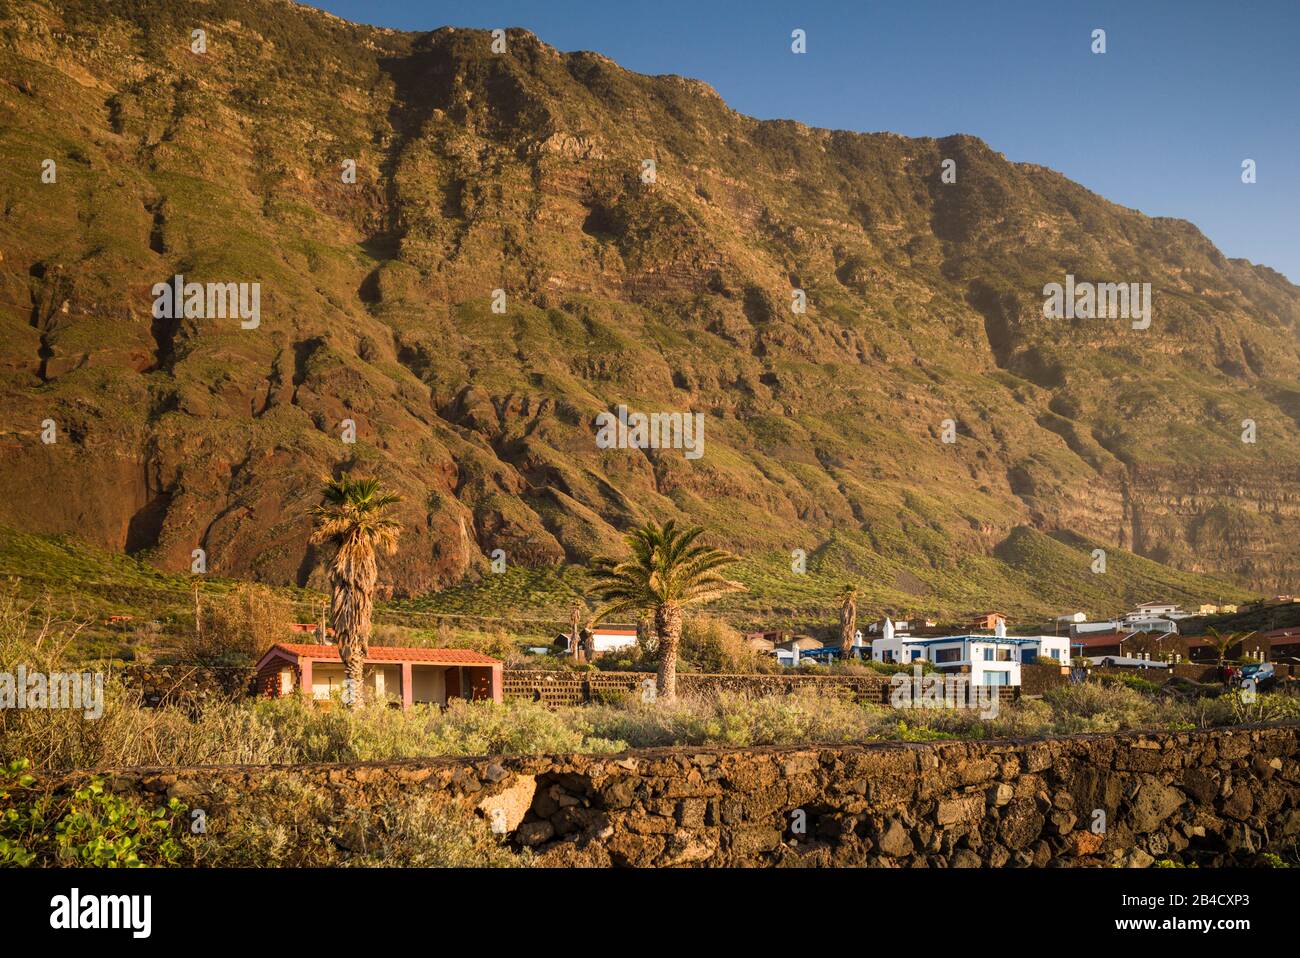 Spain, Canary Islands, El Hierro Island, Las Puntas, village architecture Stock Photo